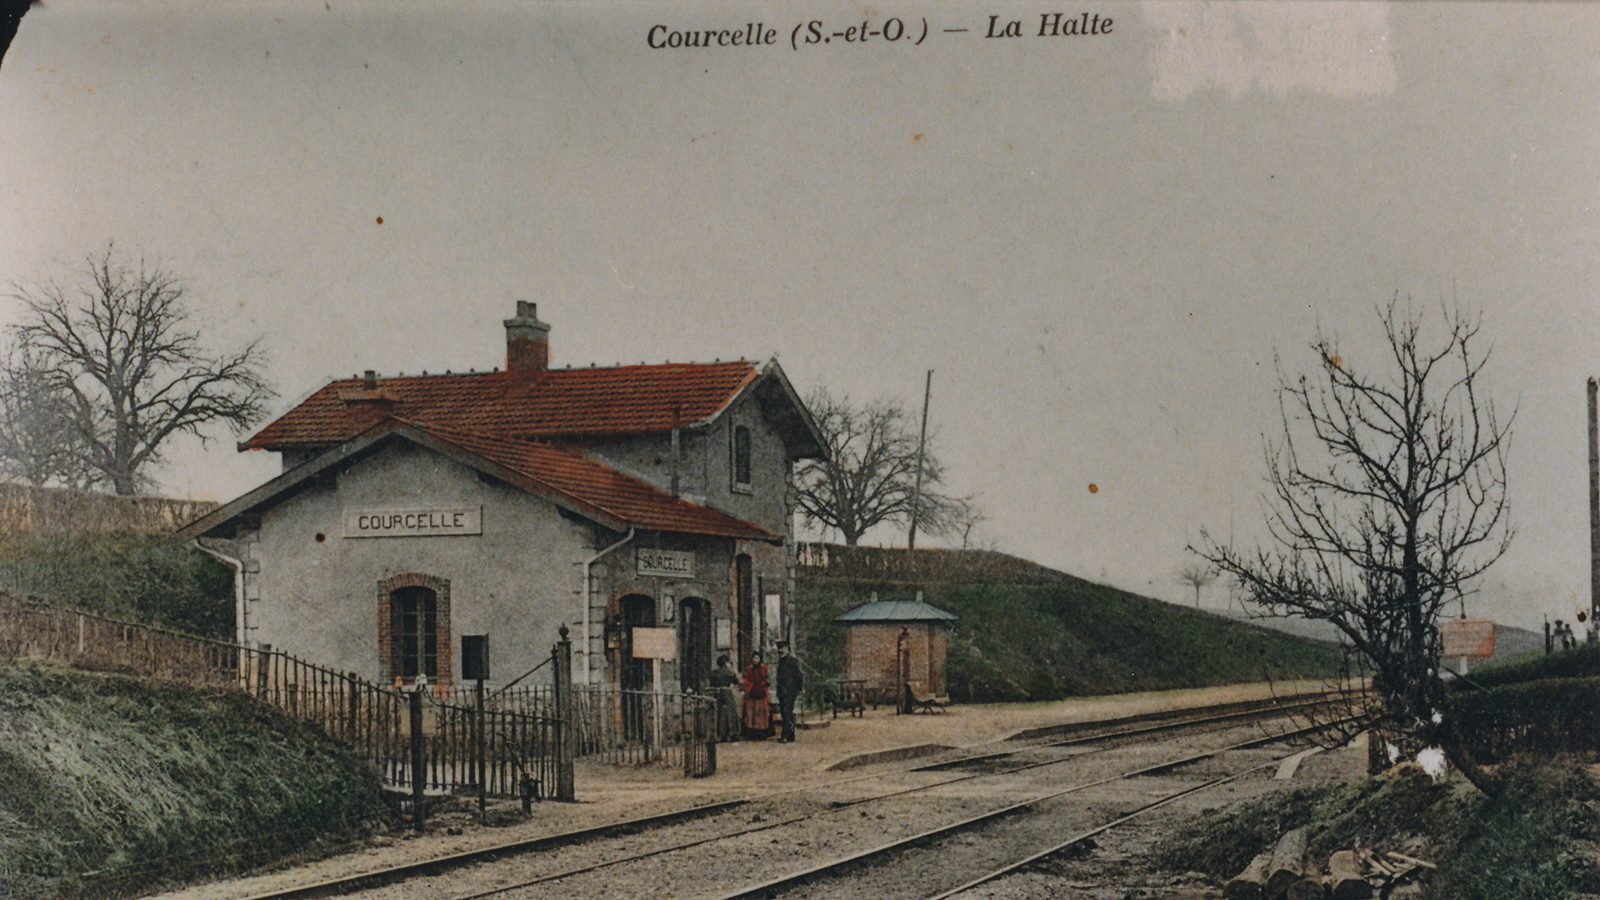 Courcelle - La Halte 